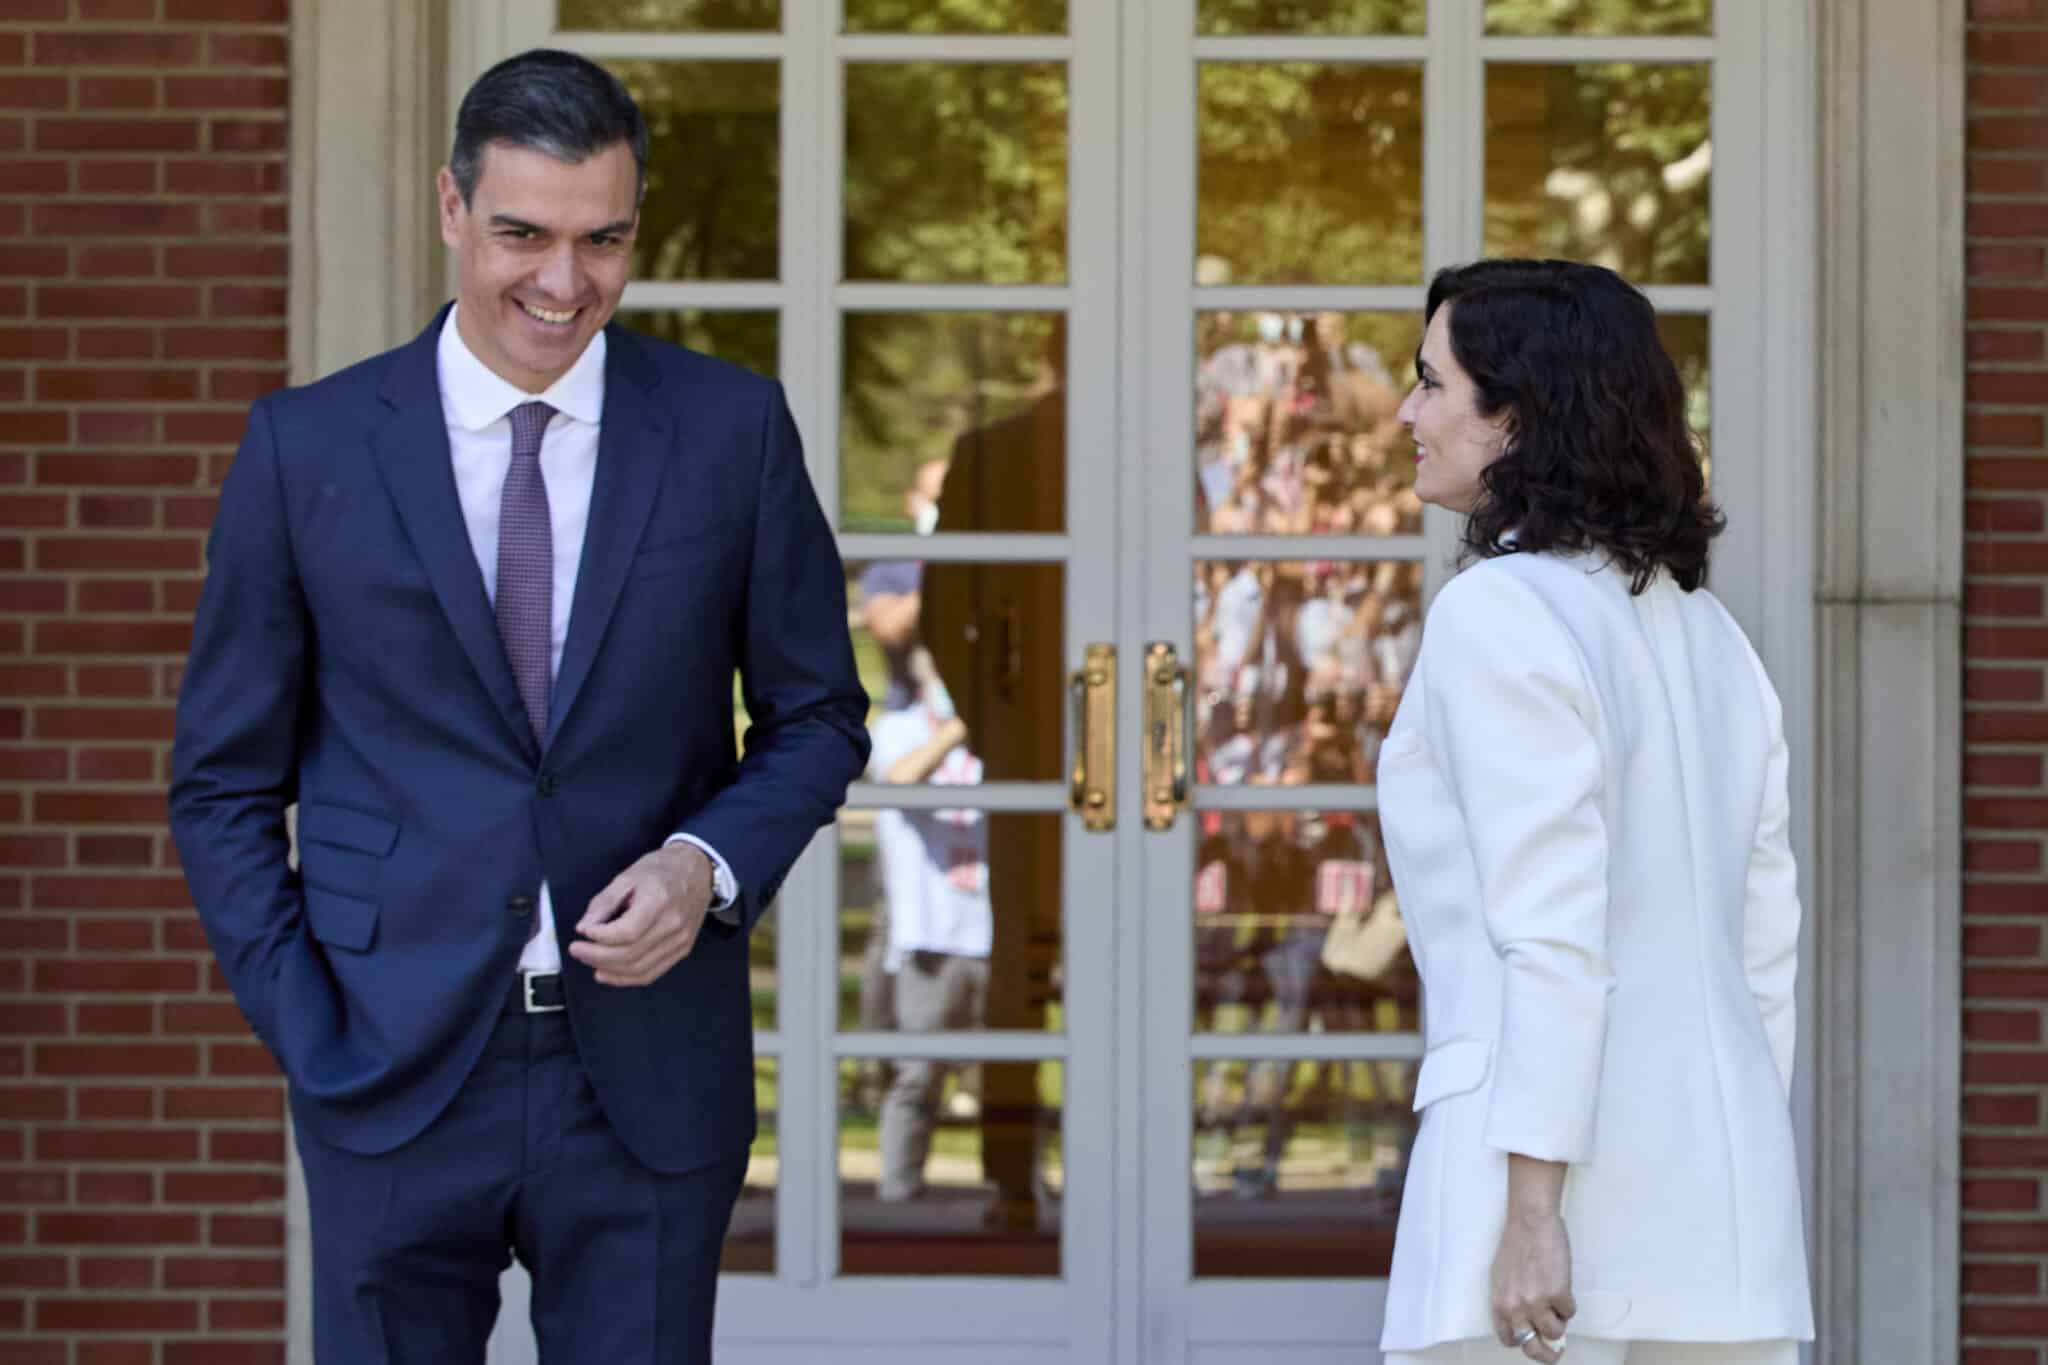 El presidente del Gobierno, Pedro Sánchez, recibe a la presidenta de la Comunidad de Madrid, Isabel Díaz Ayuso en Moncloa.